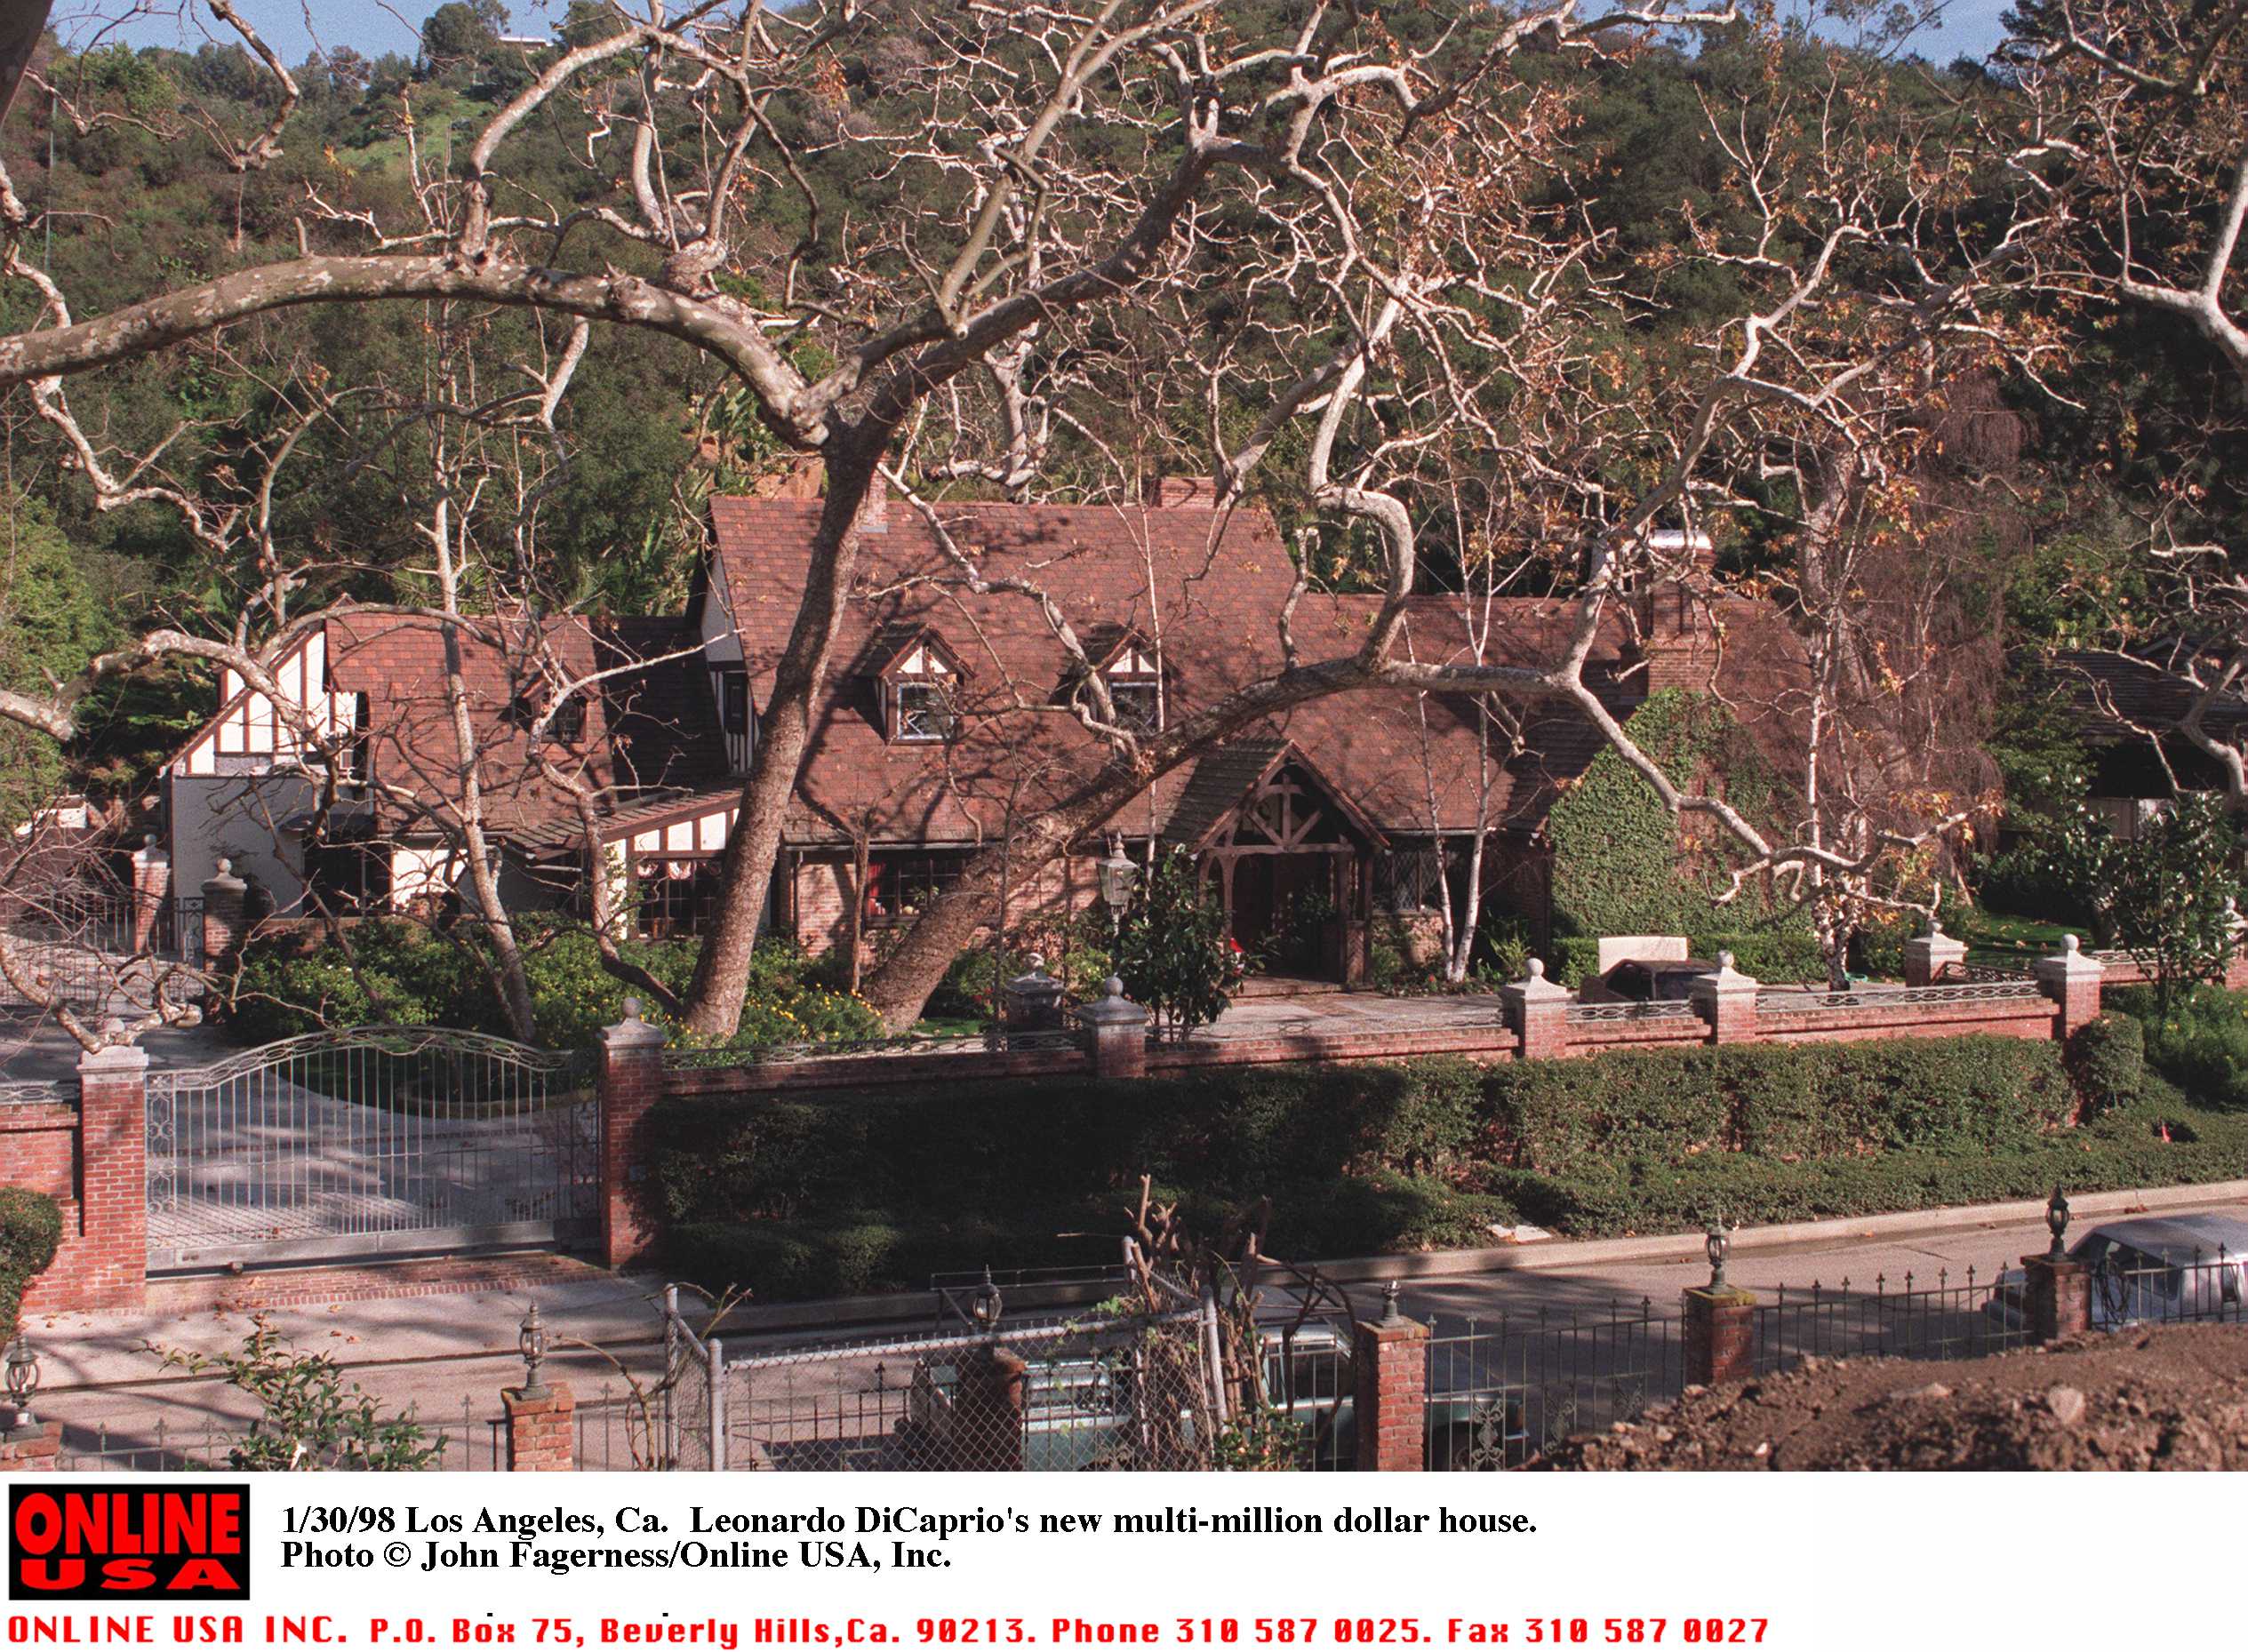 Le bungalow de Leonardo Dicaprio vu le 30 janvier 1998 | Source : Getty Images